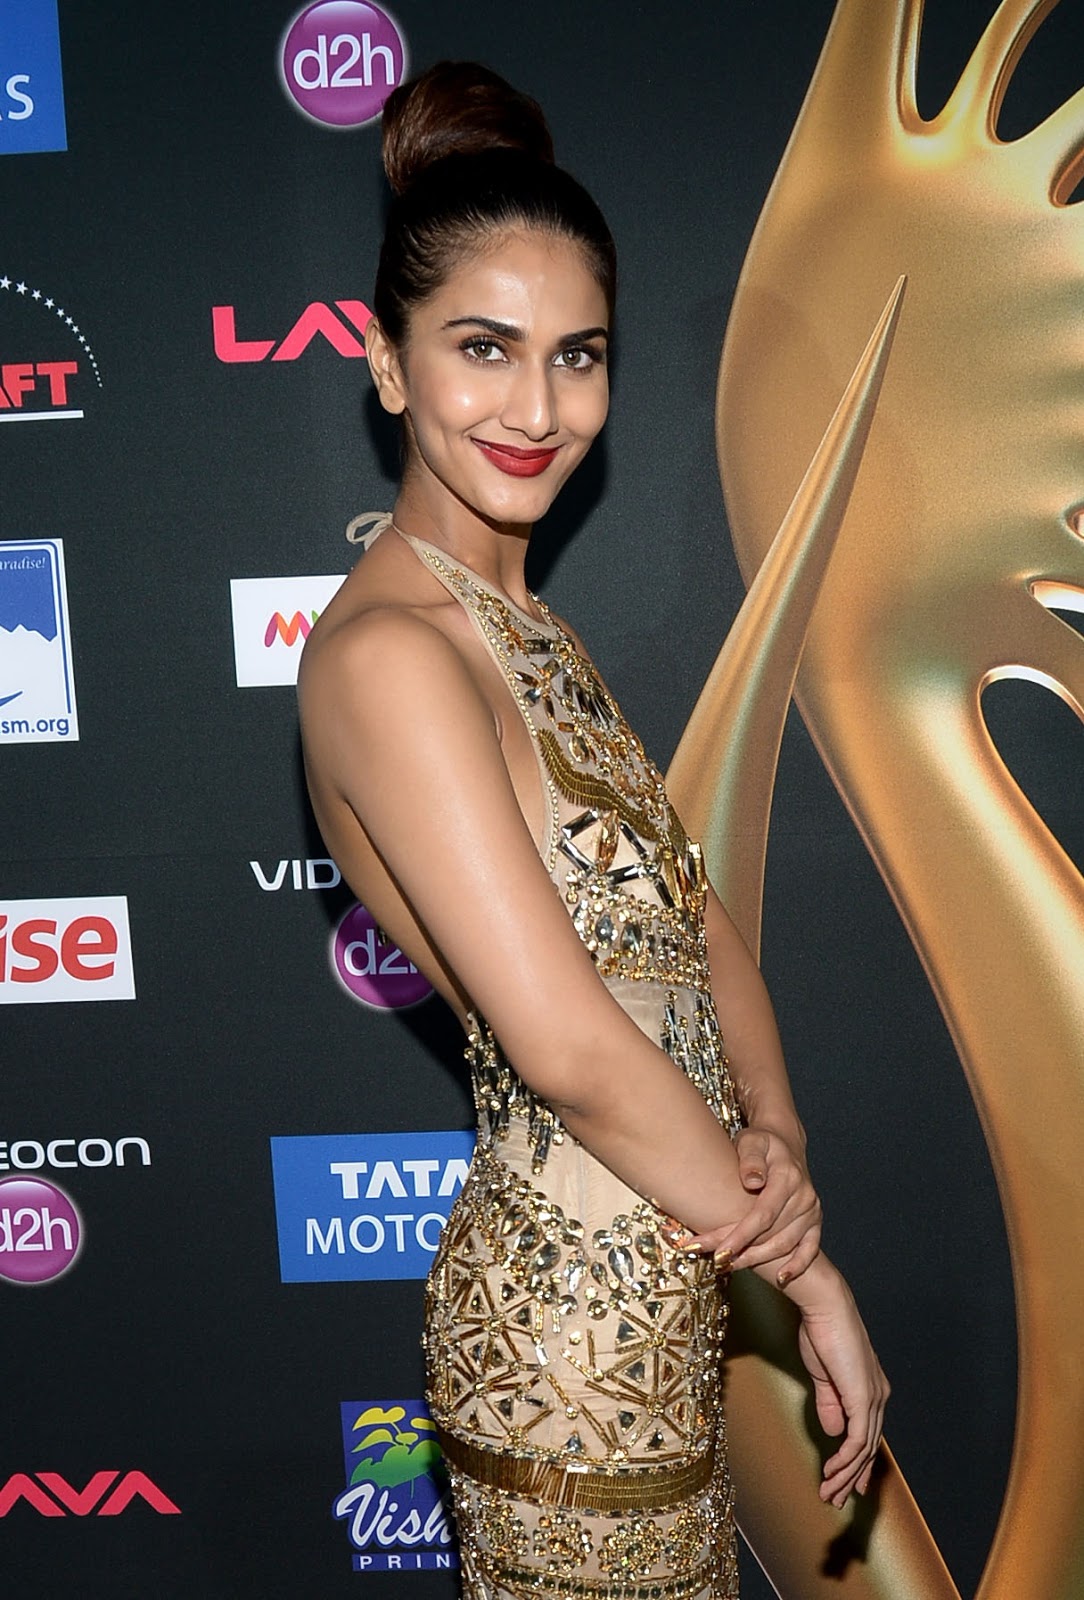 Vaani Kapoor Looks Stunning At The IIFA Awards 2014 At Raymond James